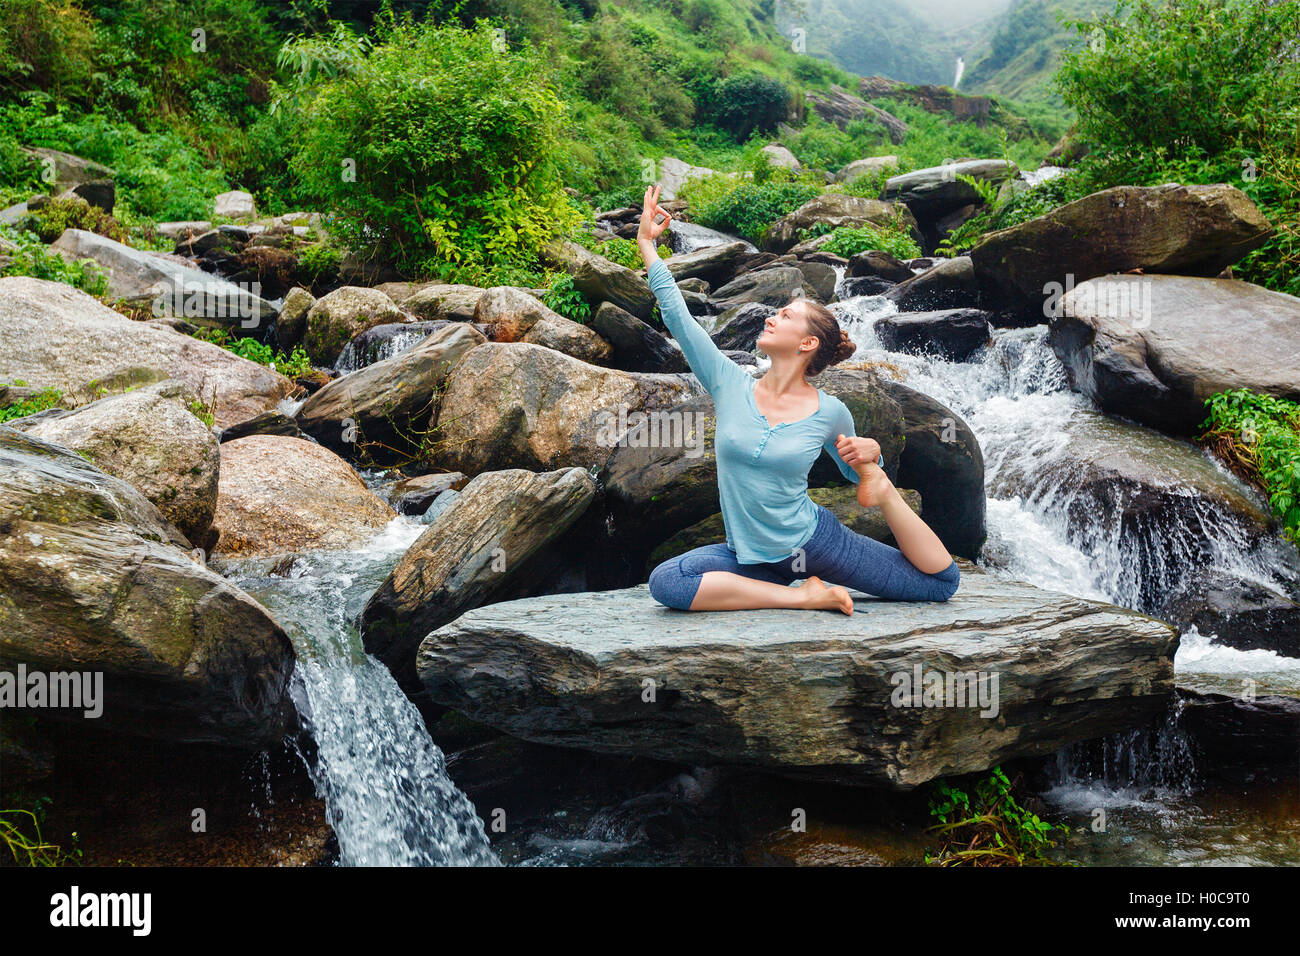 Larry mullen fit woman doing yoga asana en plein air au cascade tropicale Banque D'Images